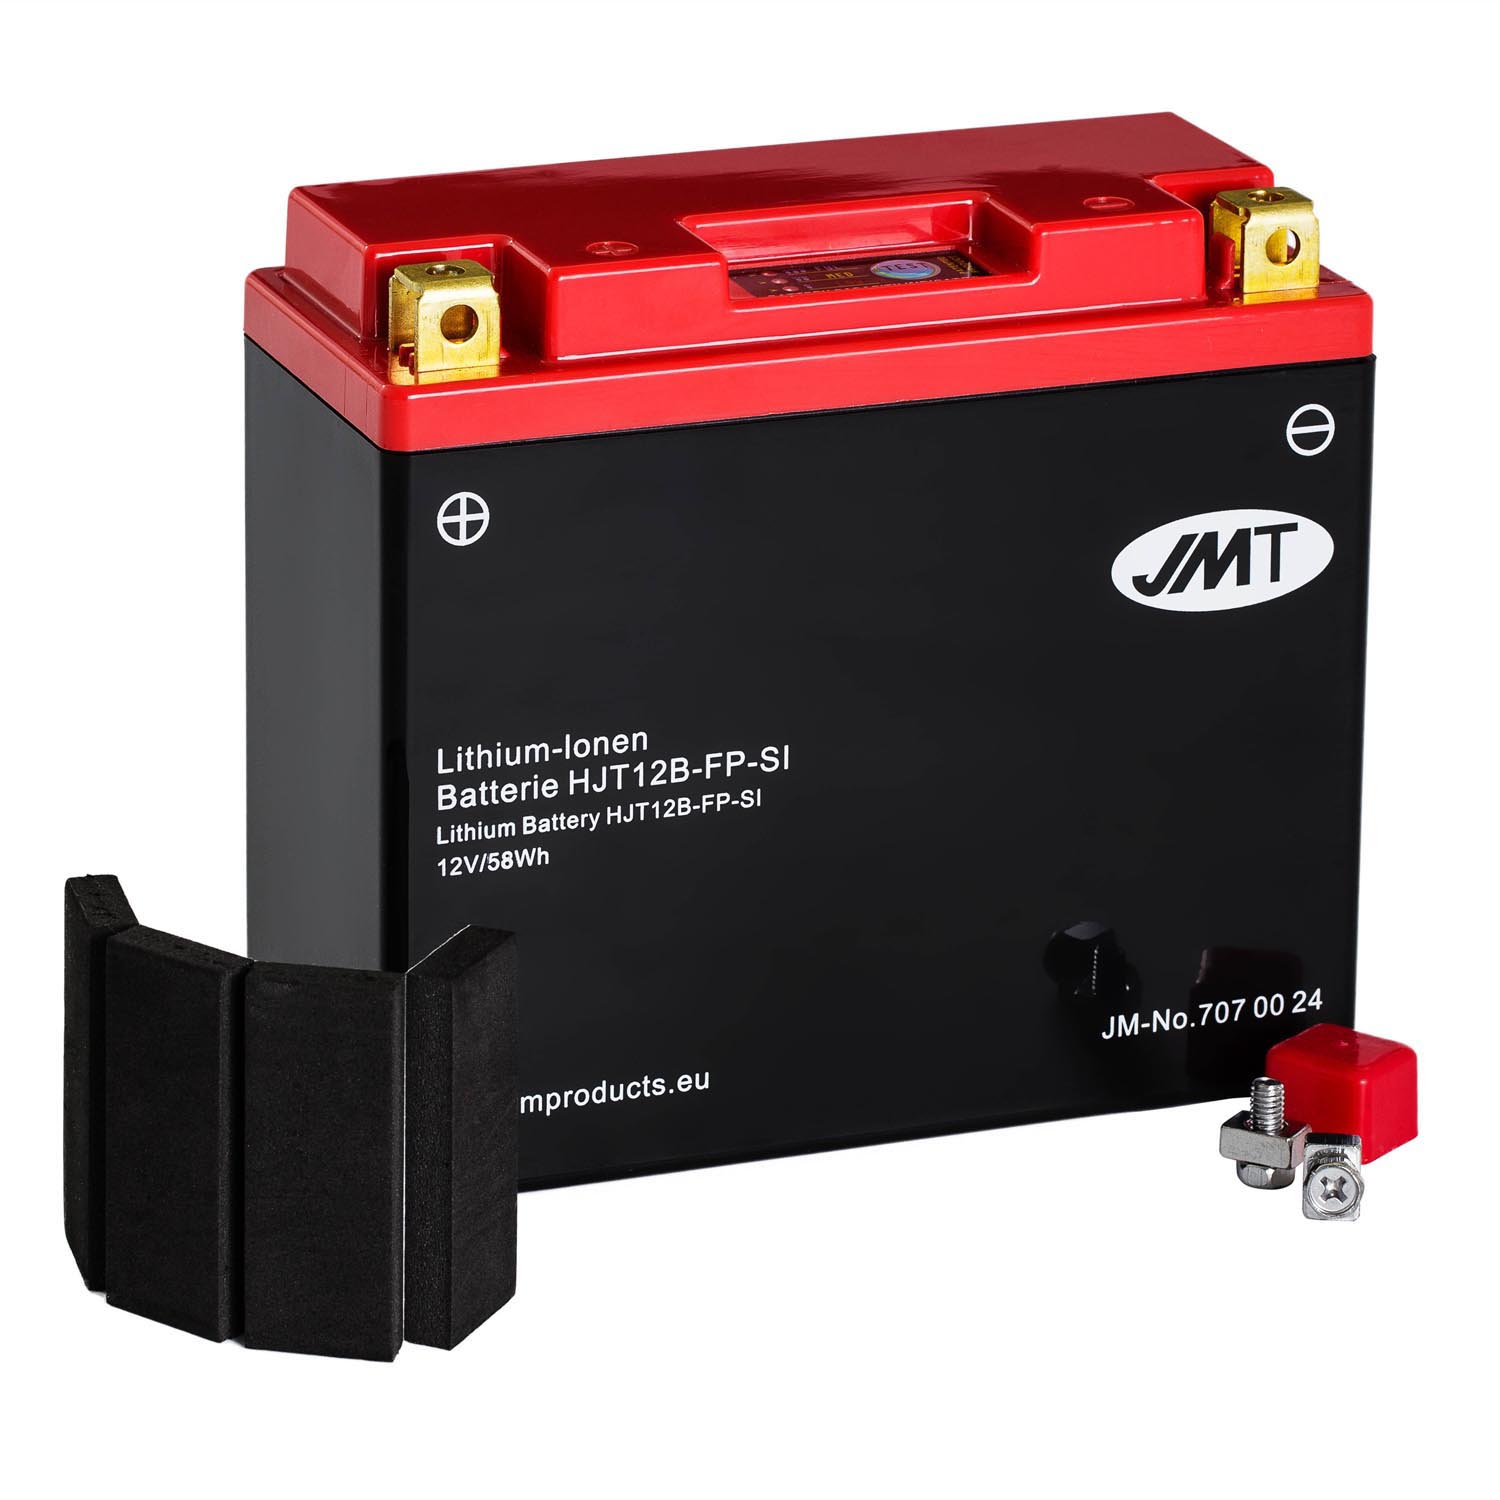 JMT Lithium-Ionen-Motorrad-Batterie HJT12B-FP 12V